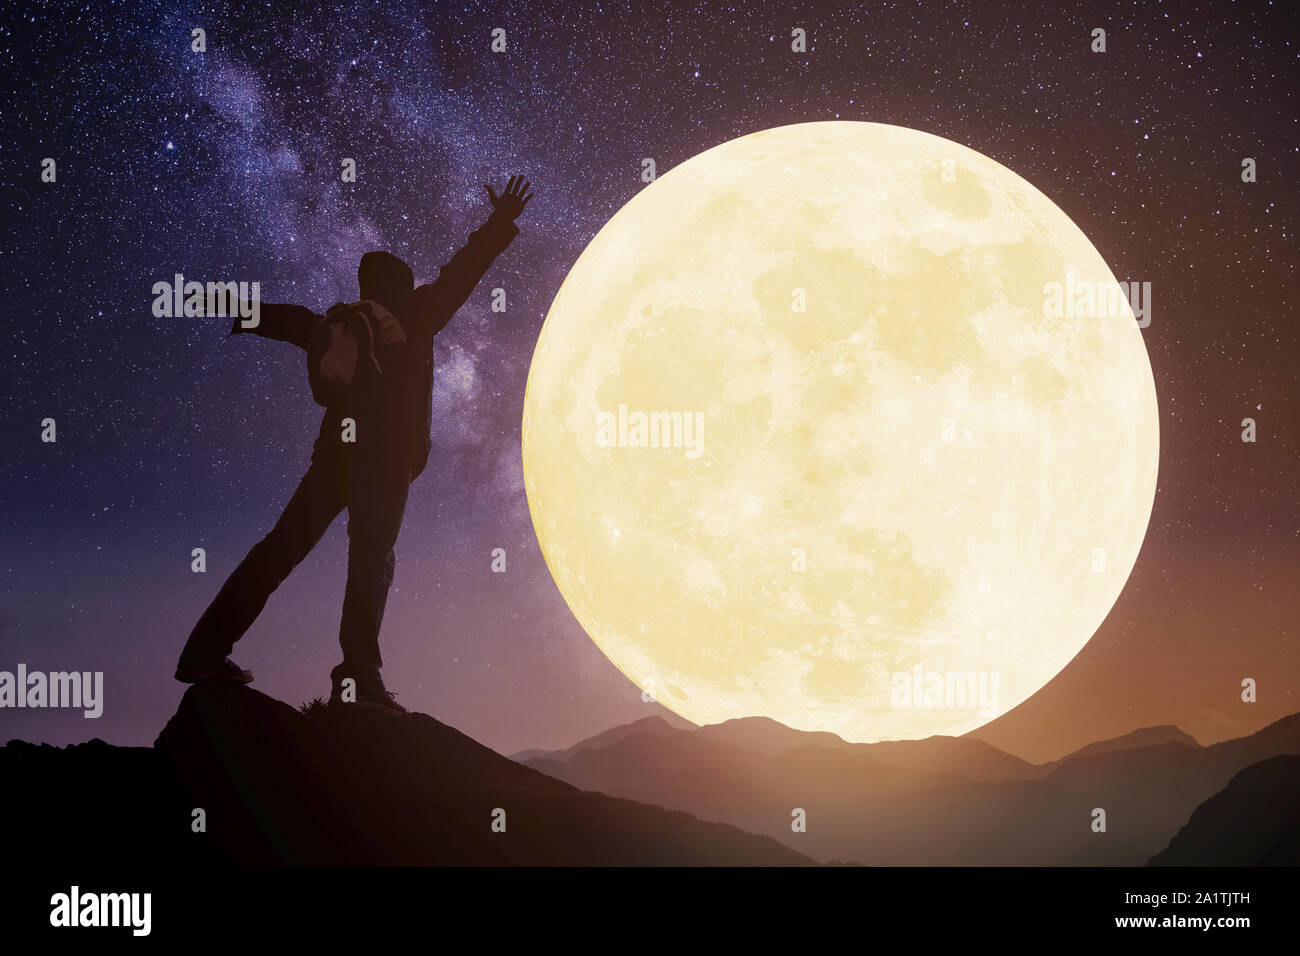 Les jeunes debout sur la montagne et regarder la lune.célébrer le festival de mi-automne Banque D'Images